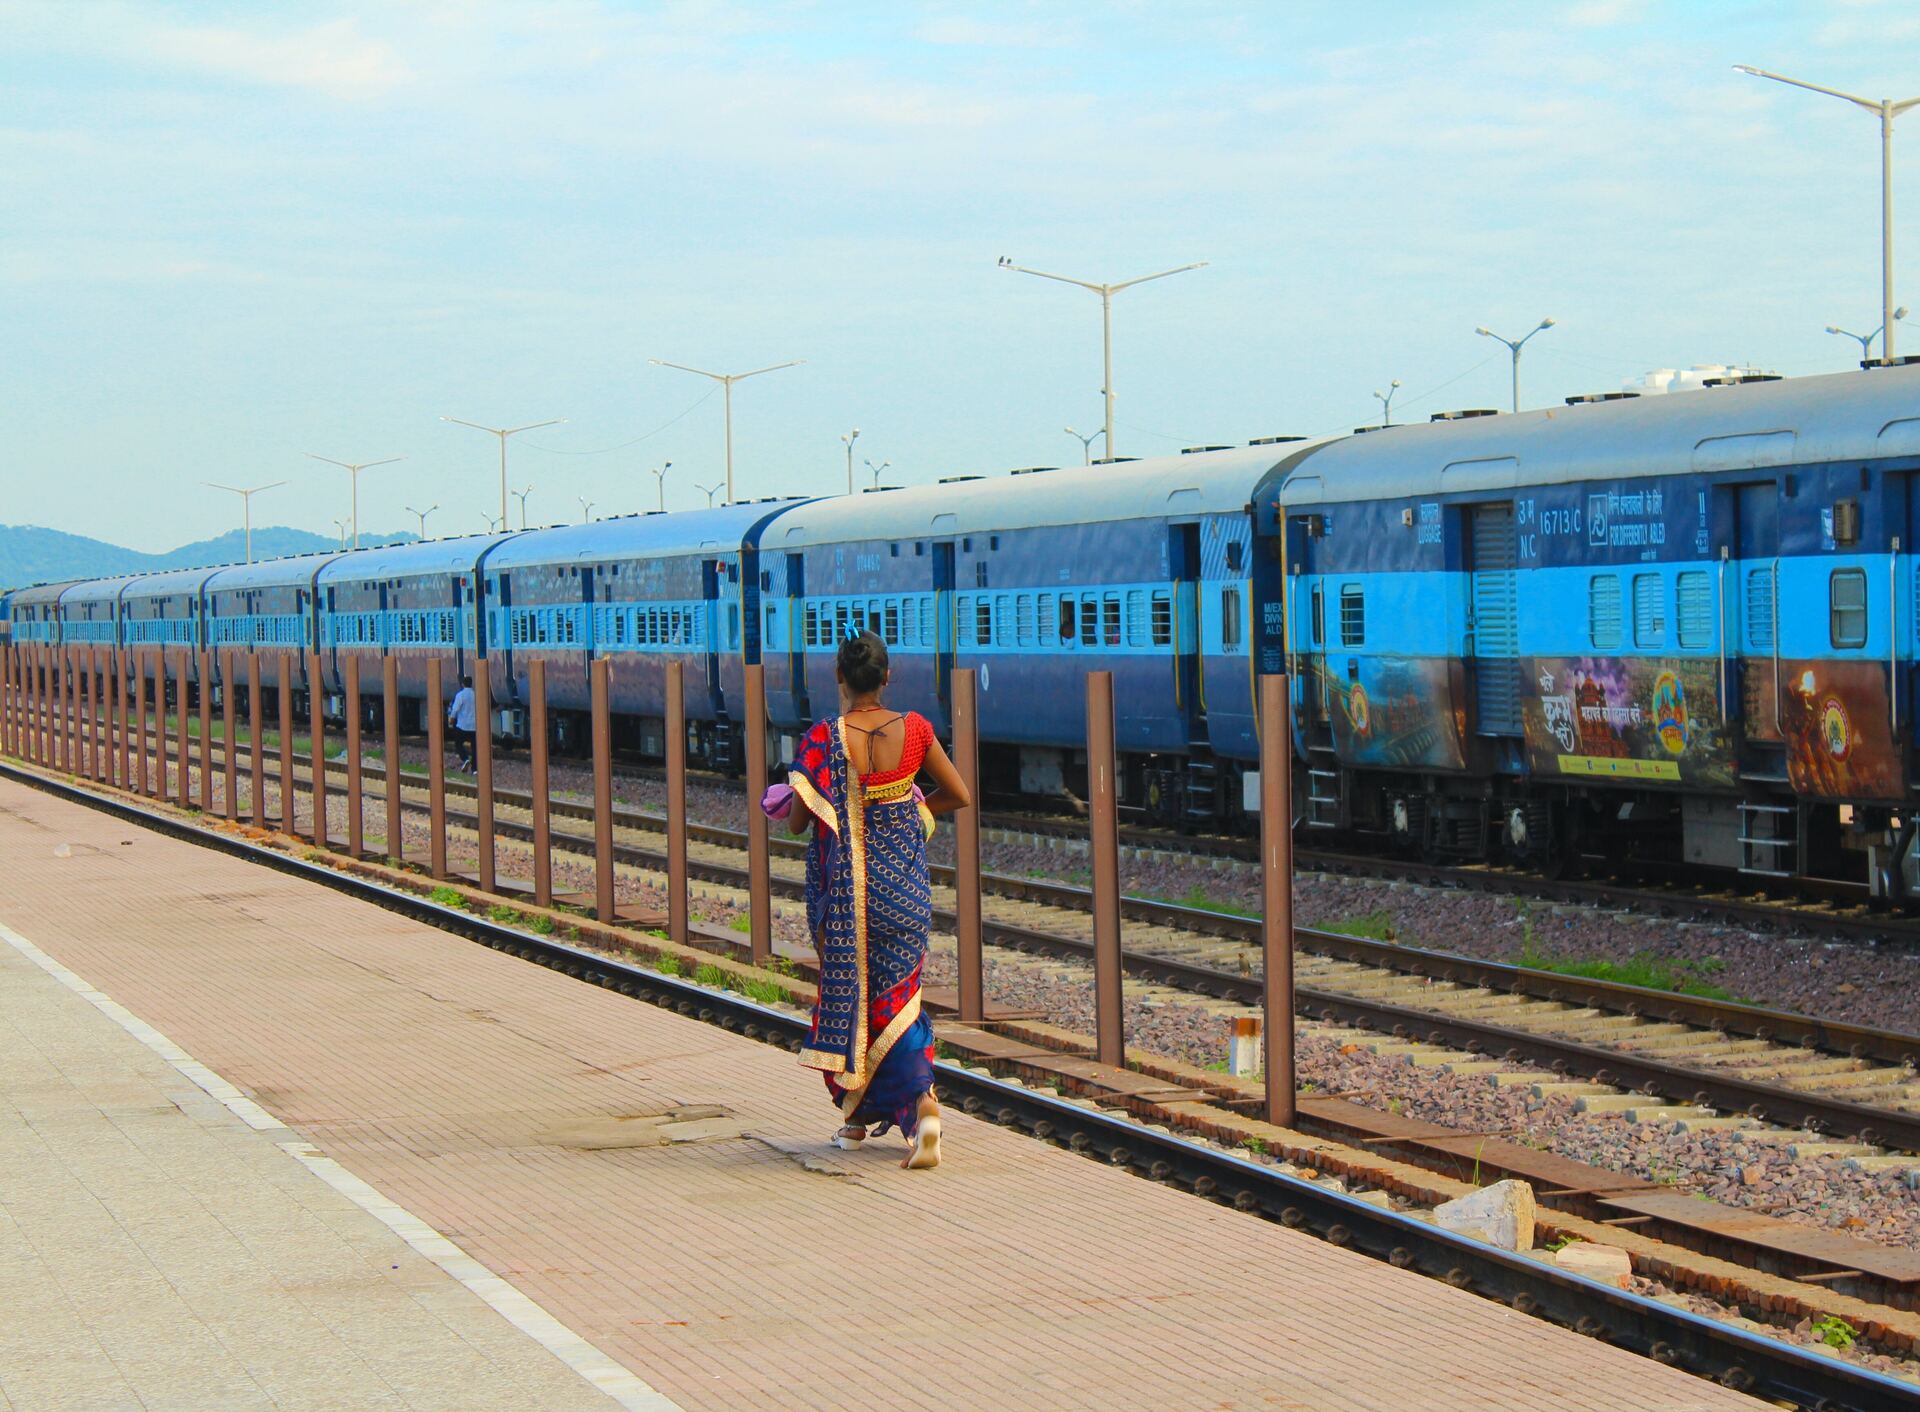 AFP: число жертв при столкновении поездов в Индии достигло 288